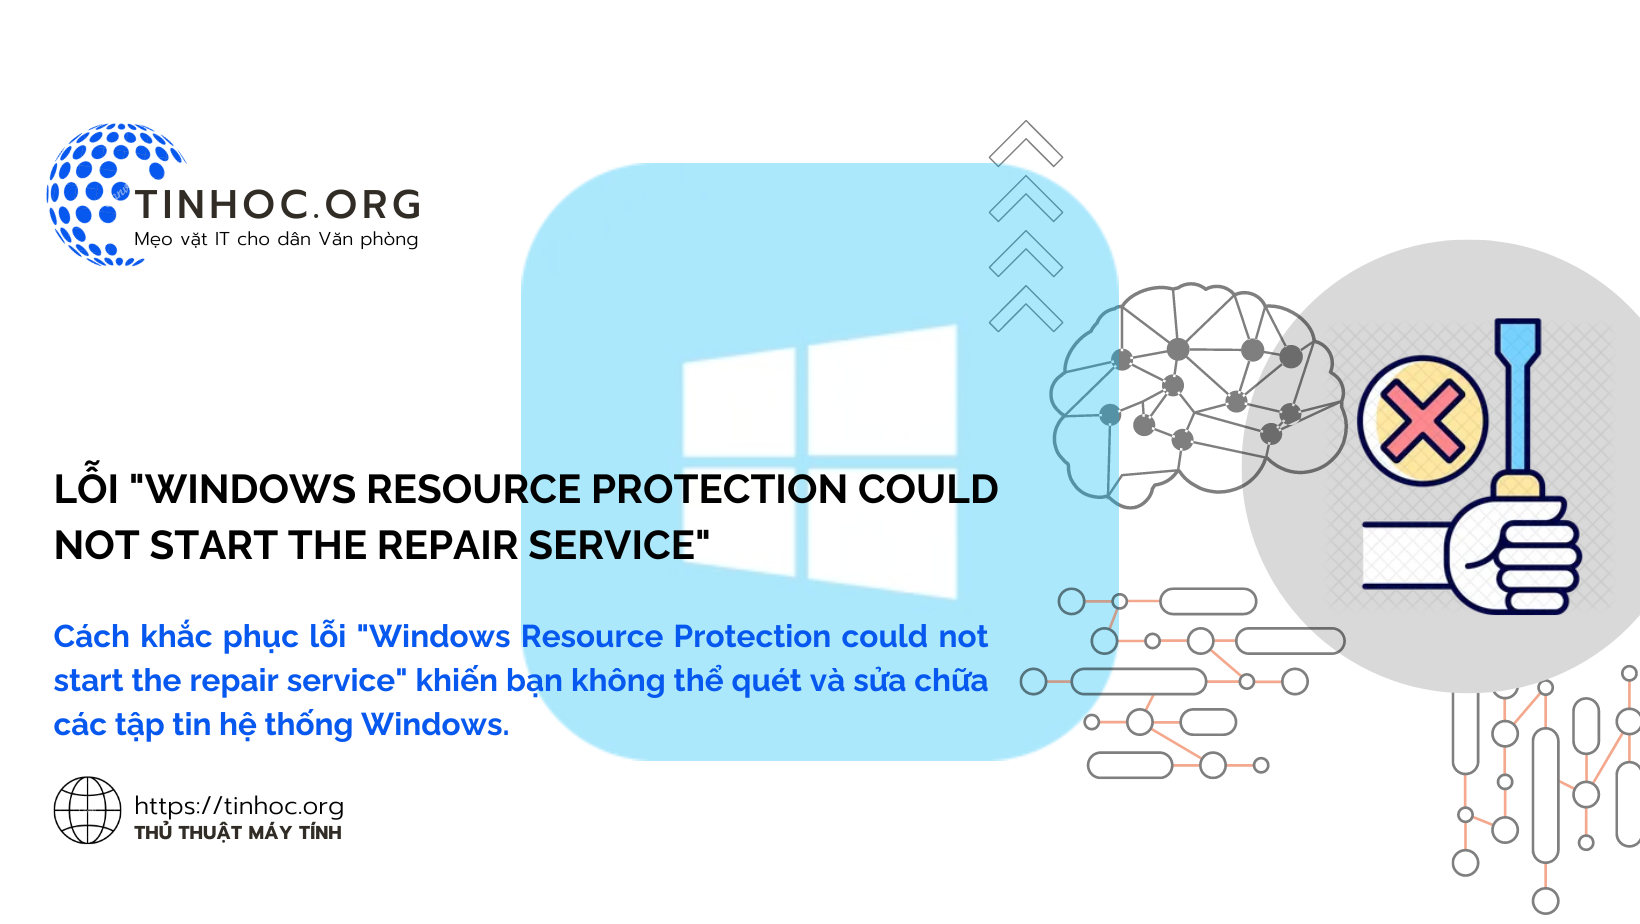 Cách khắc phục lỗi "Windows Resource Protection could not start the repair service" khiến bạn không thể quét và sửa chữa các tập tin hệ thống Windows.